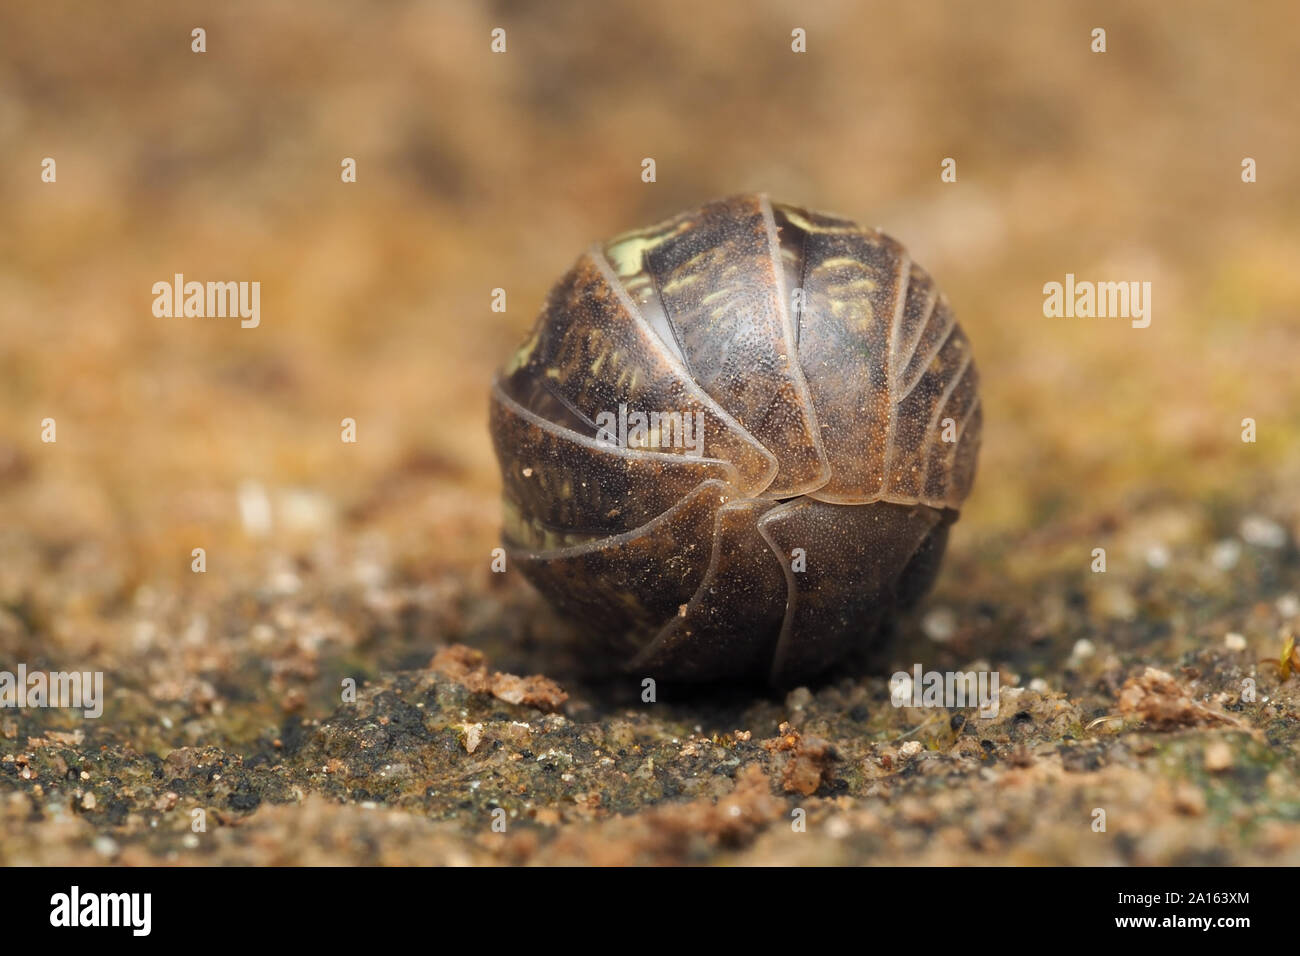 Cloporte Armadillidium vulgare (pilule) recroquevillé en boule défensive. Tipperary, Irlande Banque D'Images